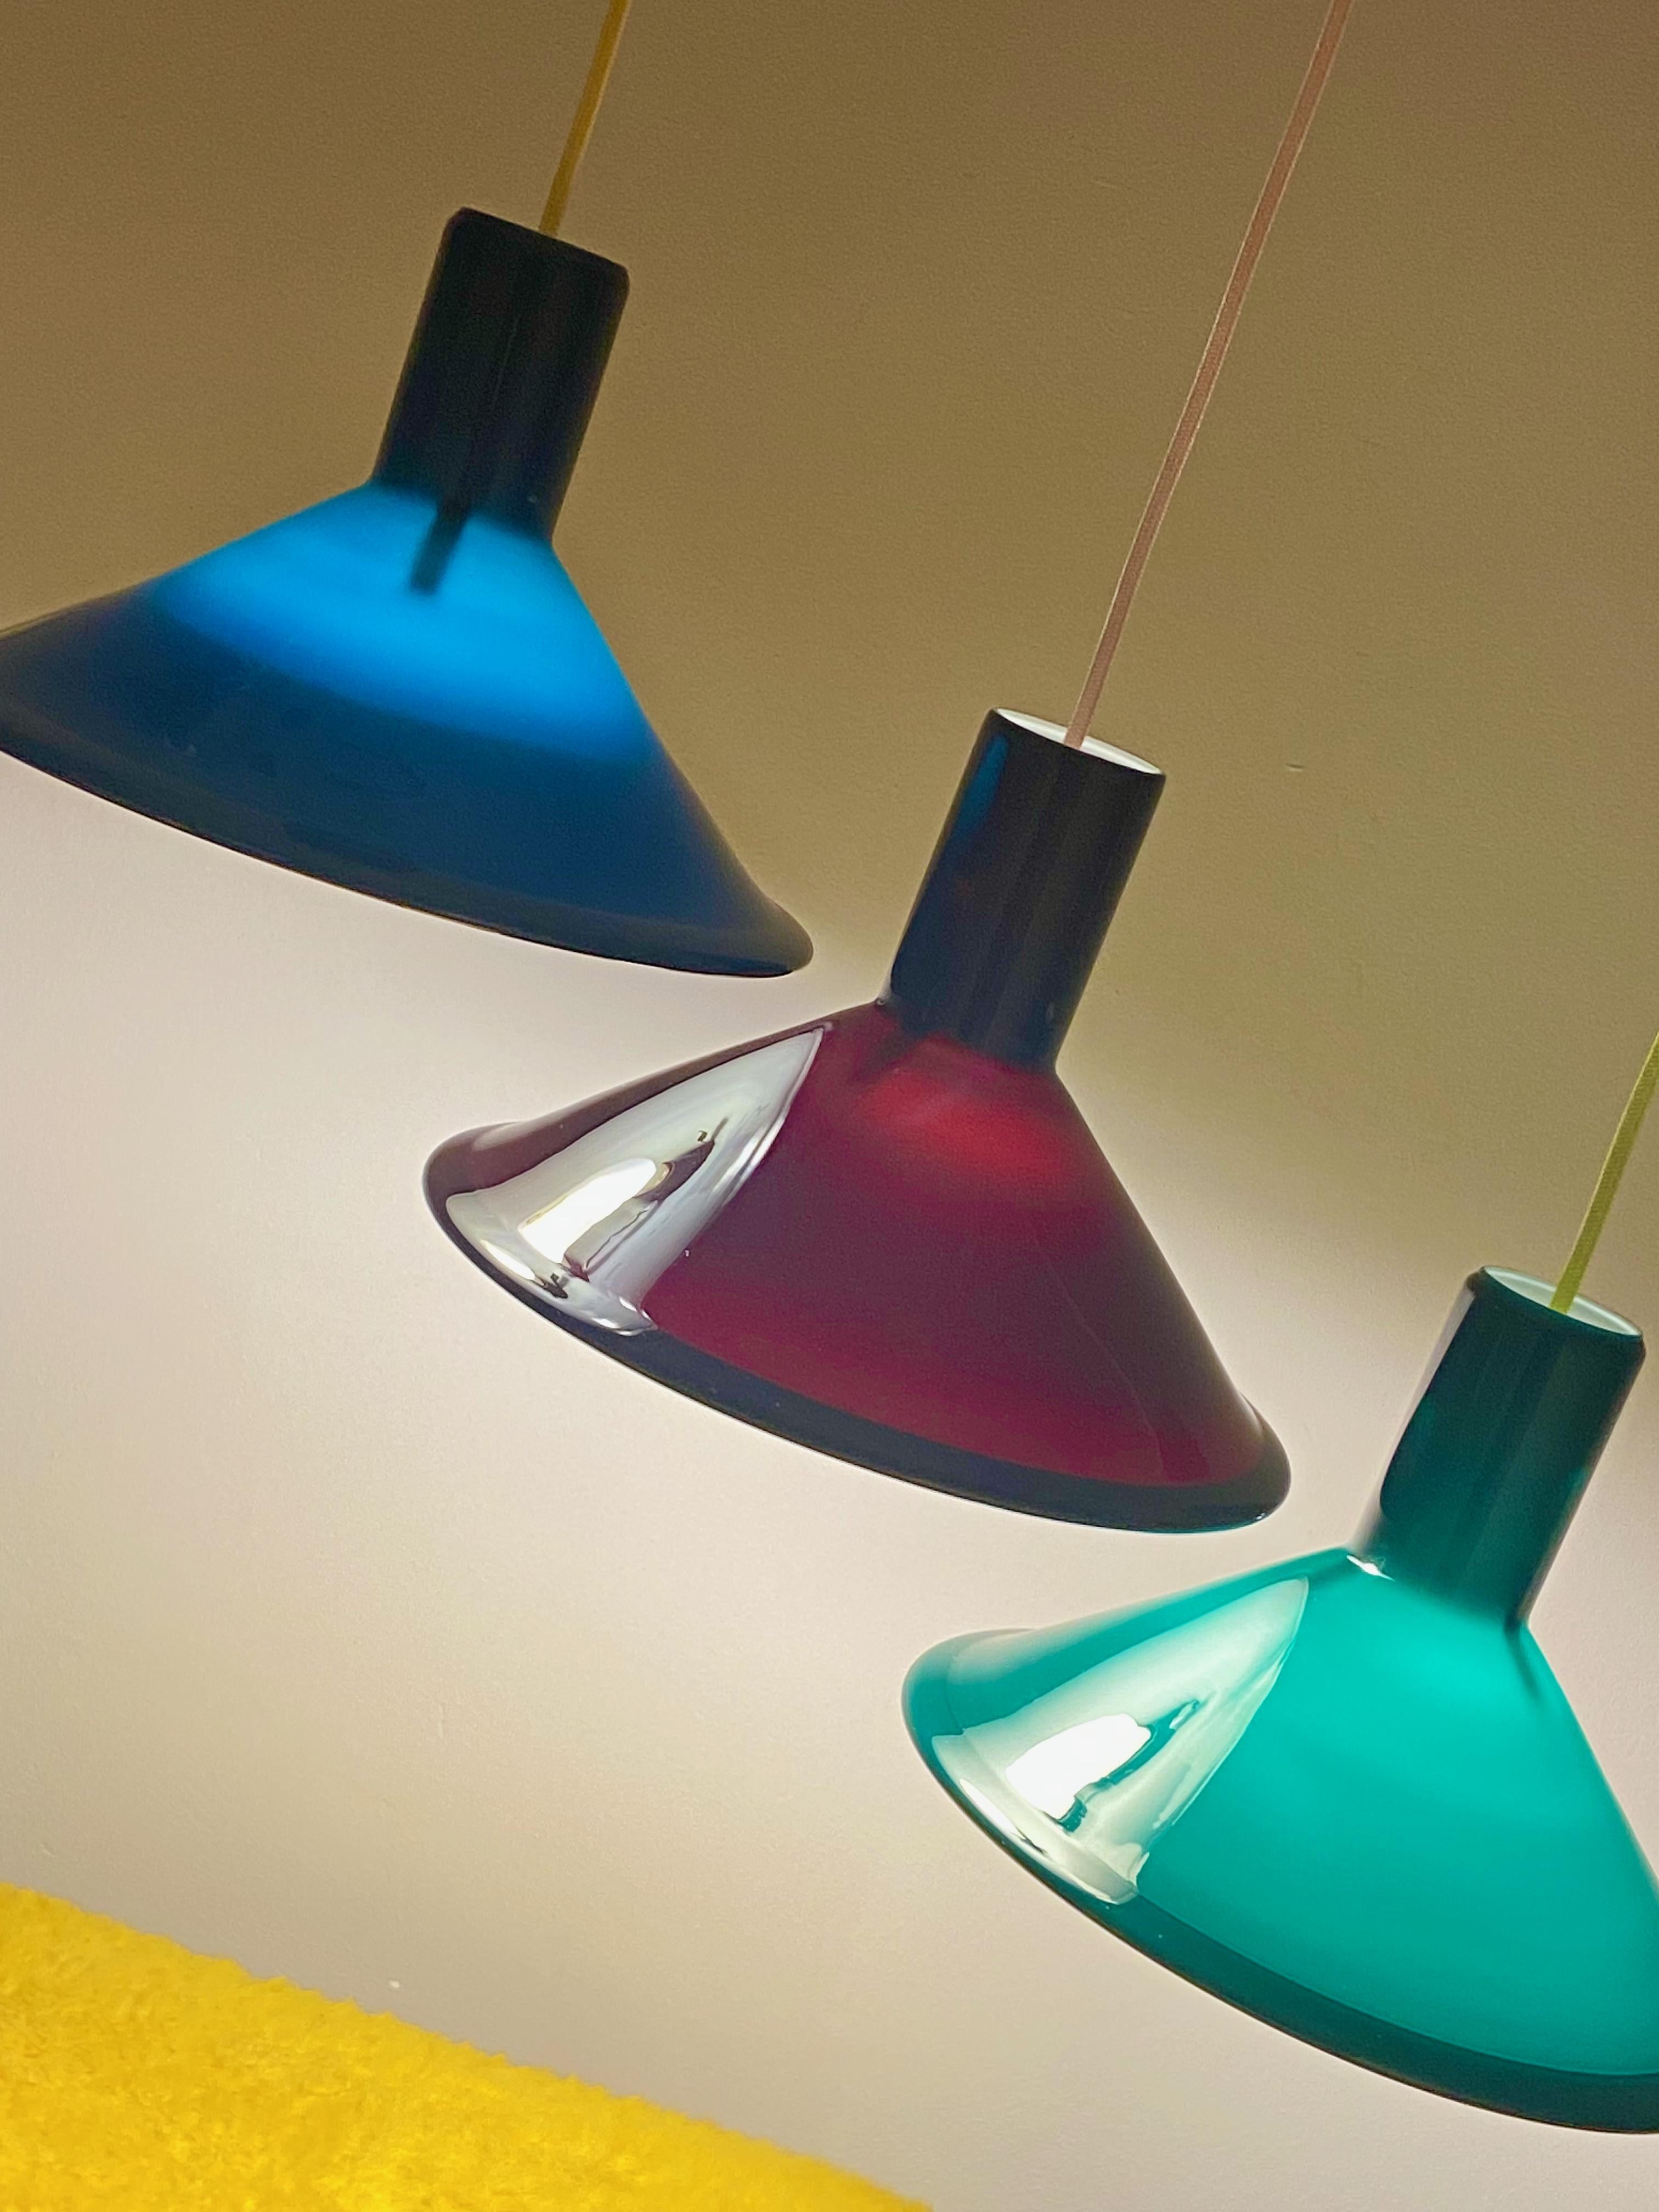 P&T-Pendelleuchte, entworfen von Michael Bang für Holmegaard in den 1970er Jahren. Diese dänische Lampe besteht aus Opalglas und ist außen dunkelgrün und innen weiß. Die Lampe ist in sehr gutem Zustand, keine Schäden und kommt mit neongelber